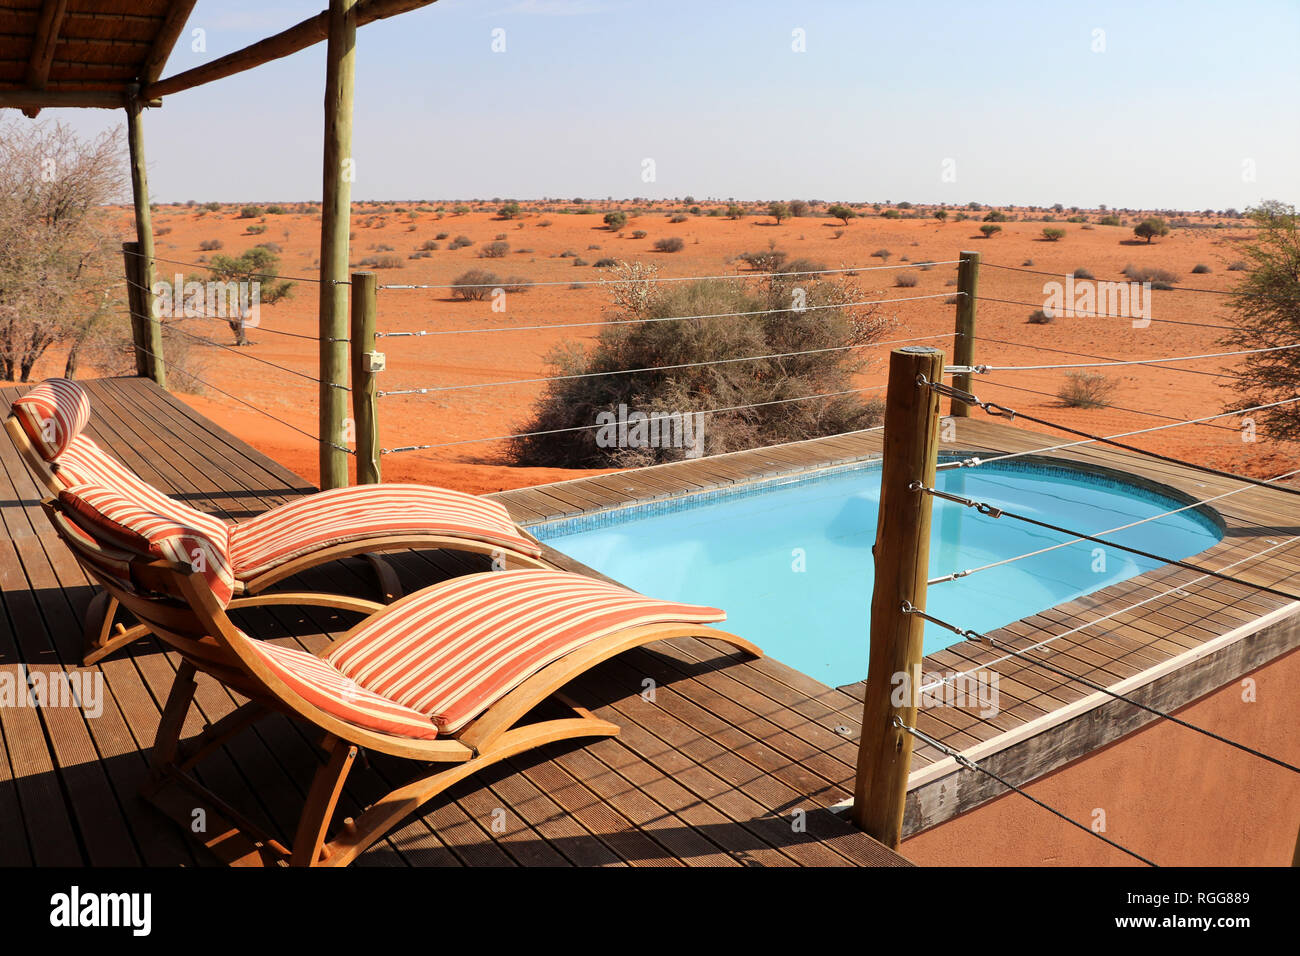 Piscina con hermosa vista en el desierto de Kalahari, Namibia África Foto de stock